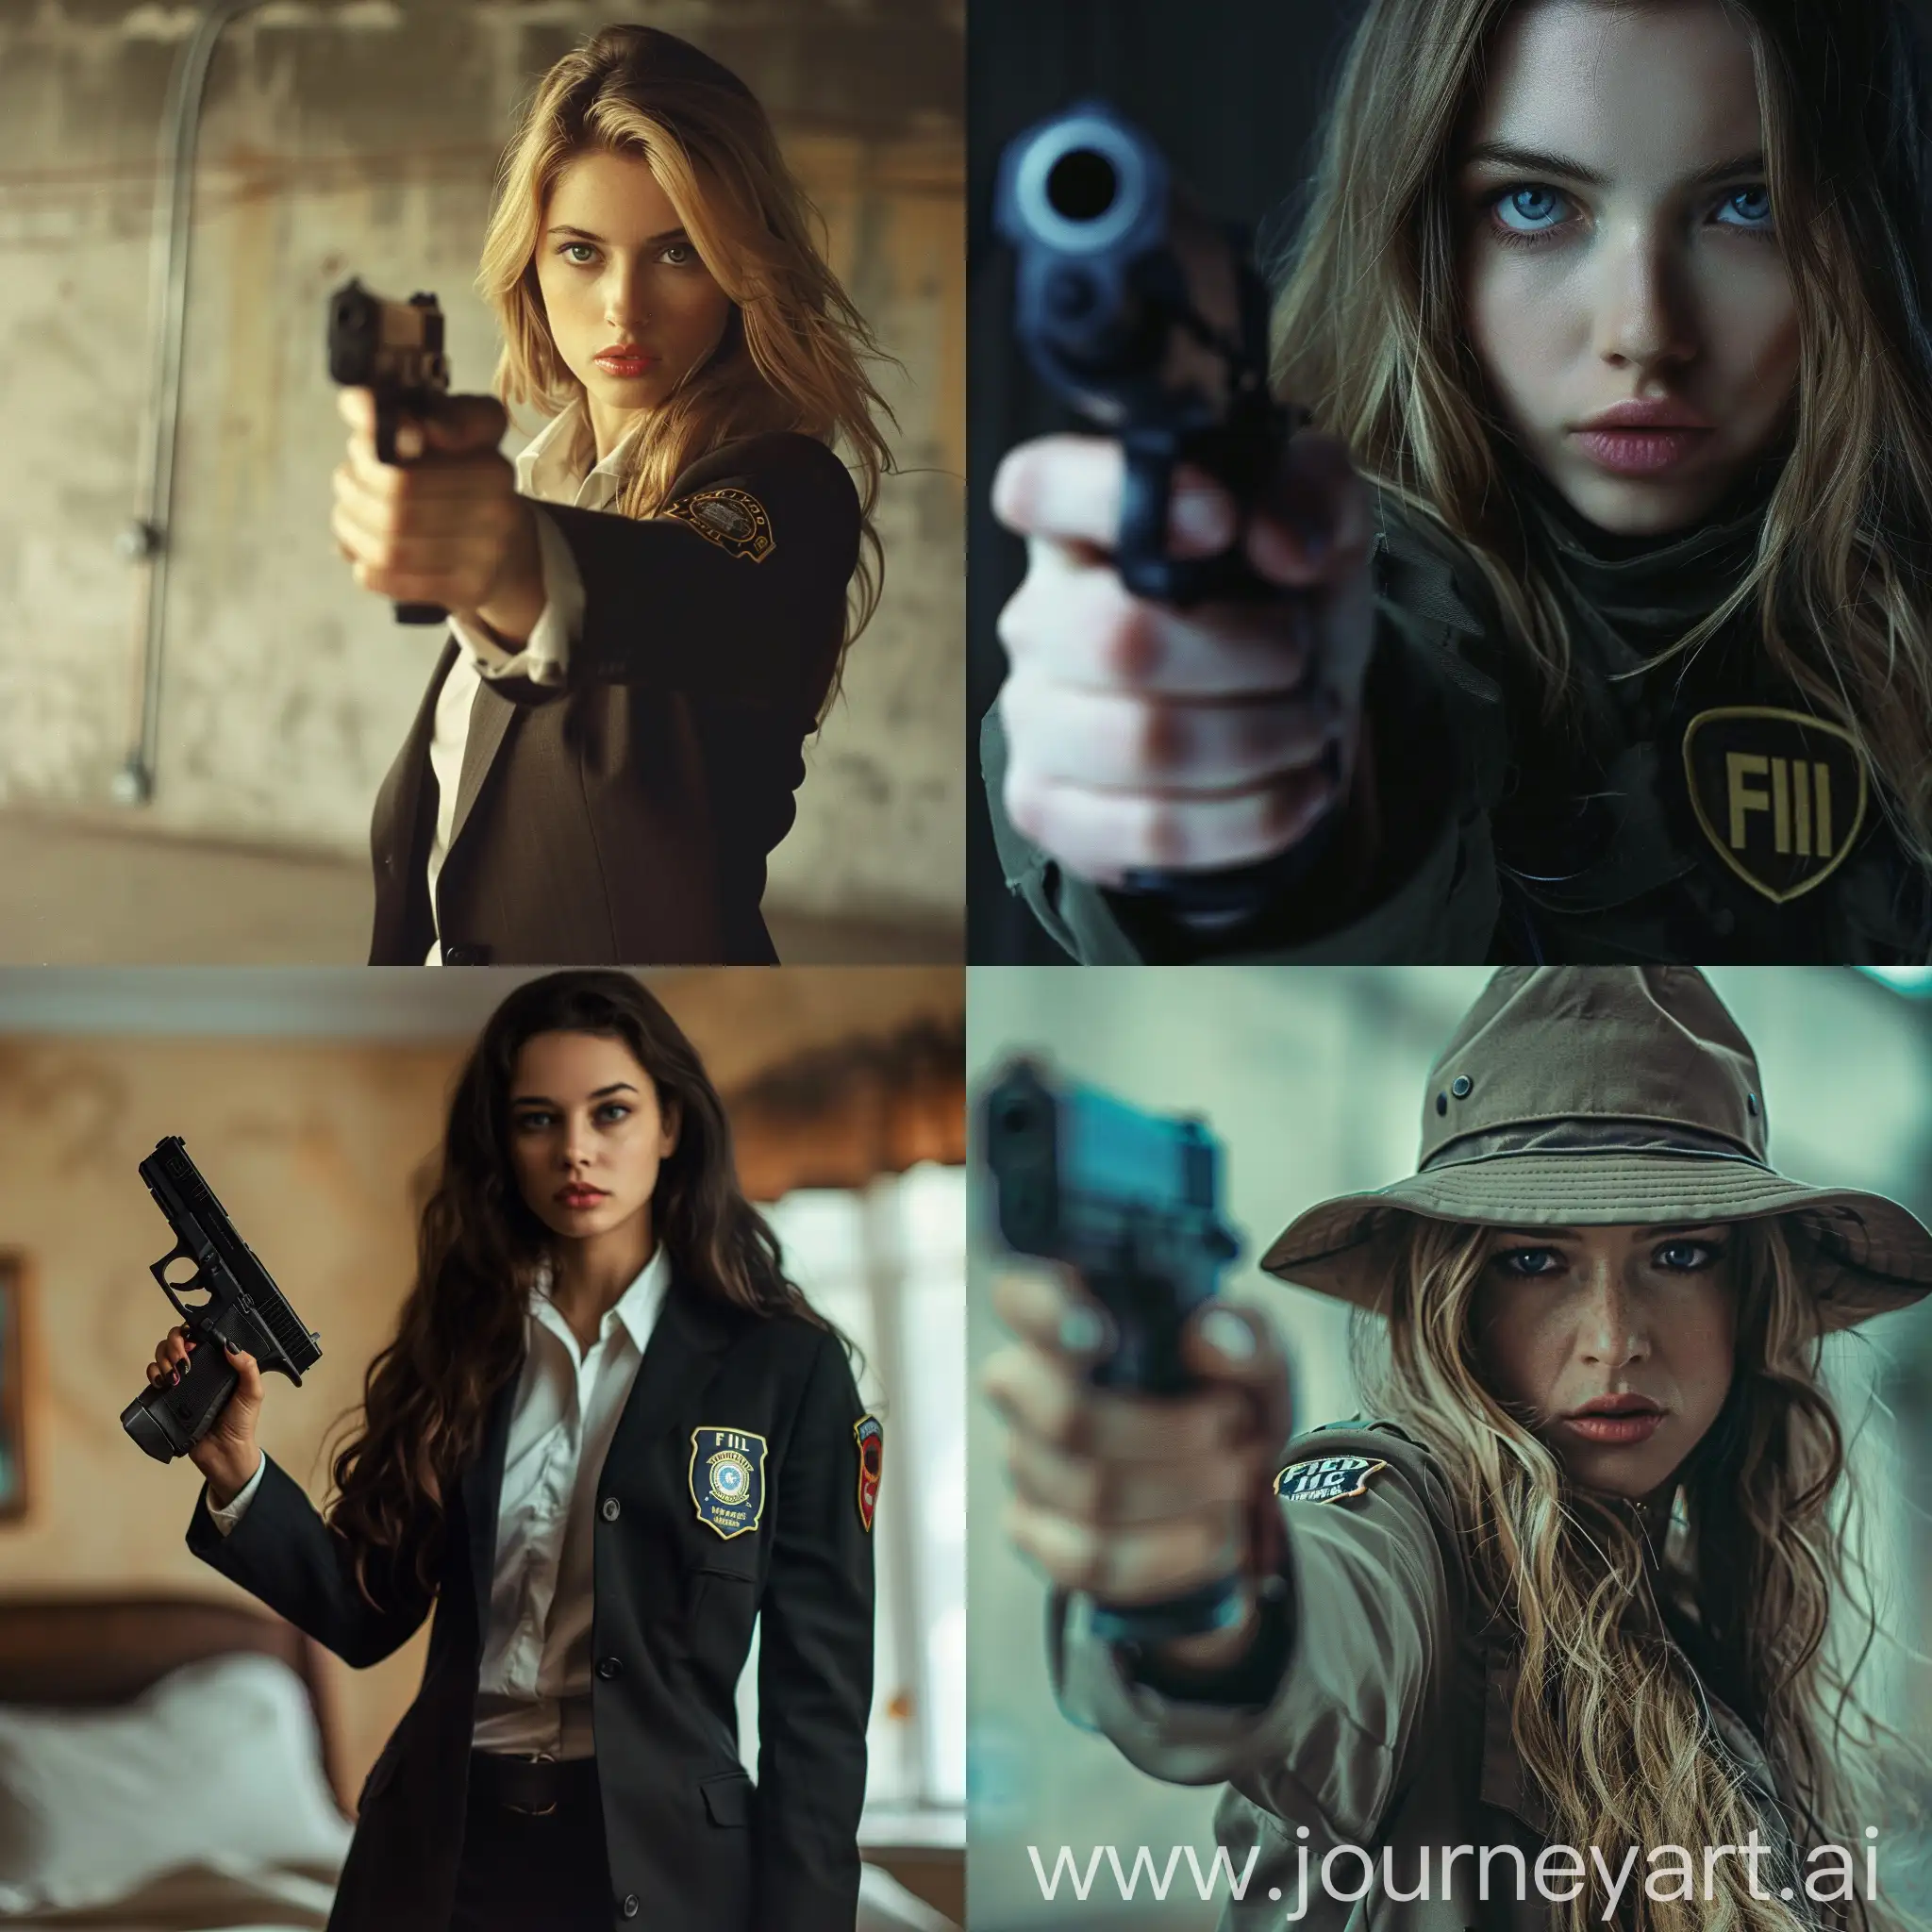 beauty fbi agent girl with gun